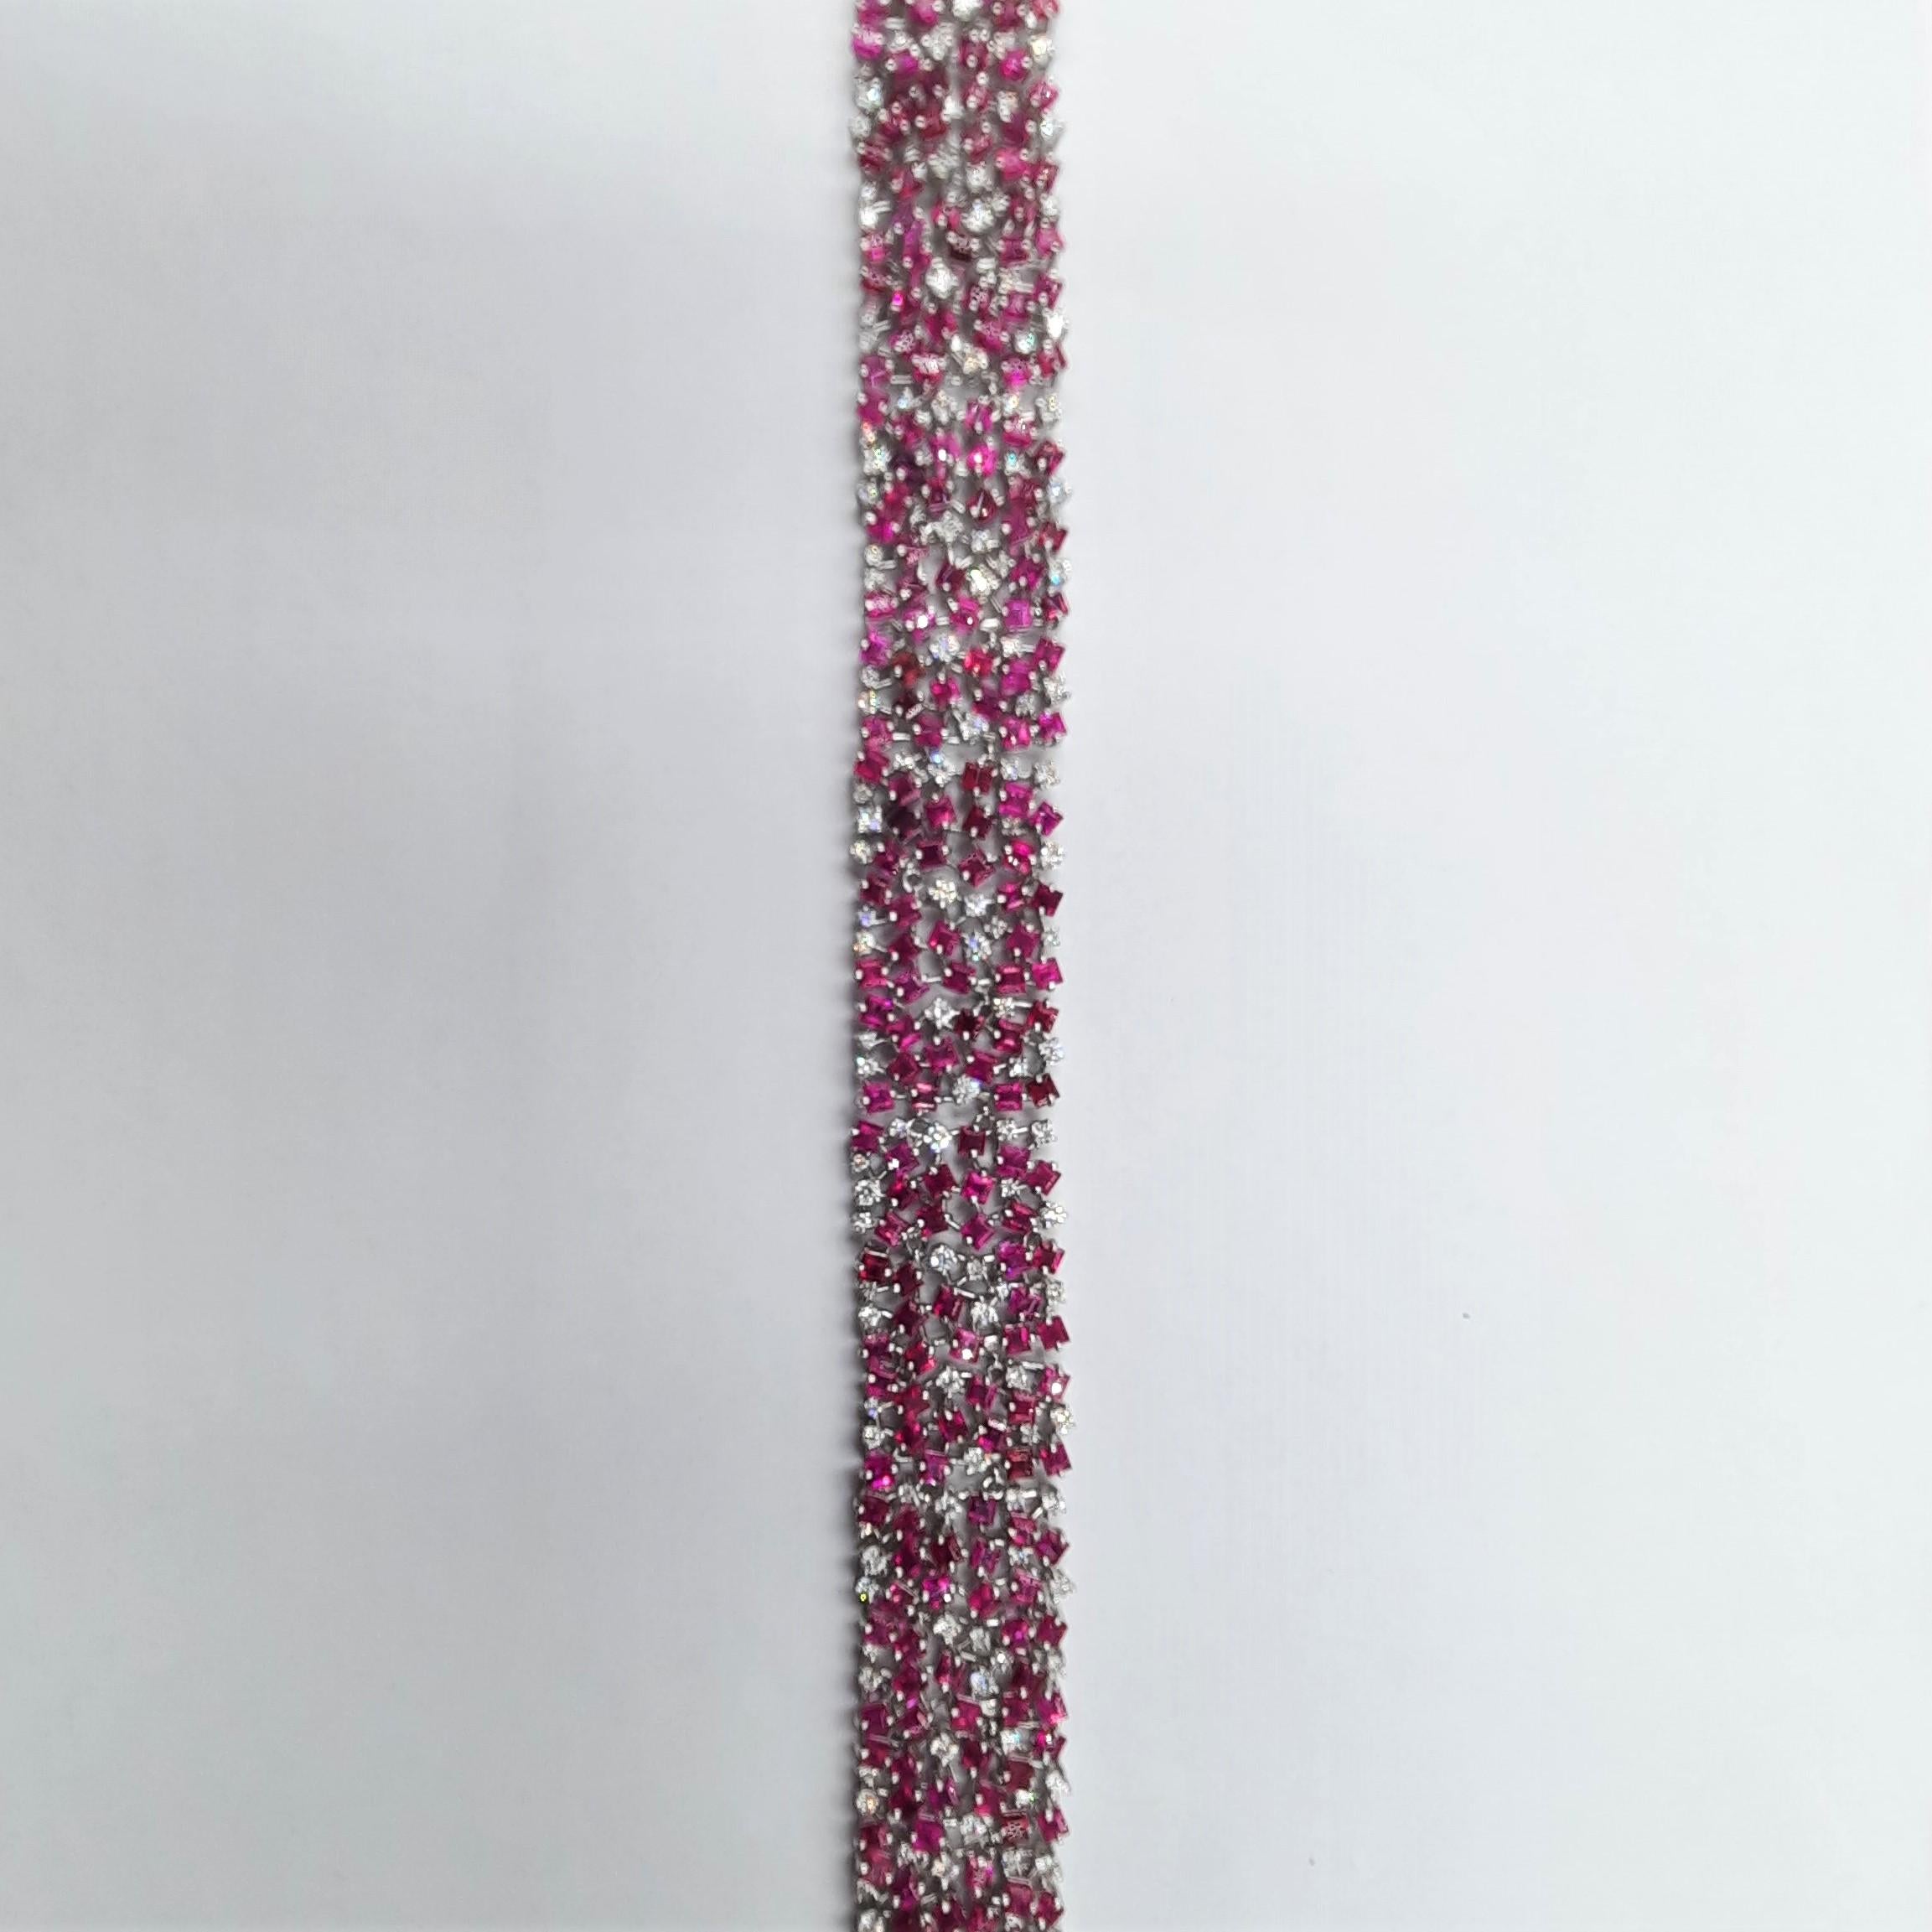 Exceptionnel et élégant bracelet italien en diamants taille brillant (3,09 carats), rubis (22,93 carats) et or blanc 18 carats (36,9 grammes).